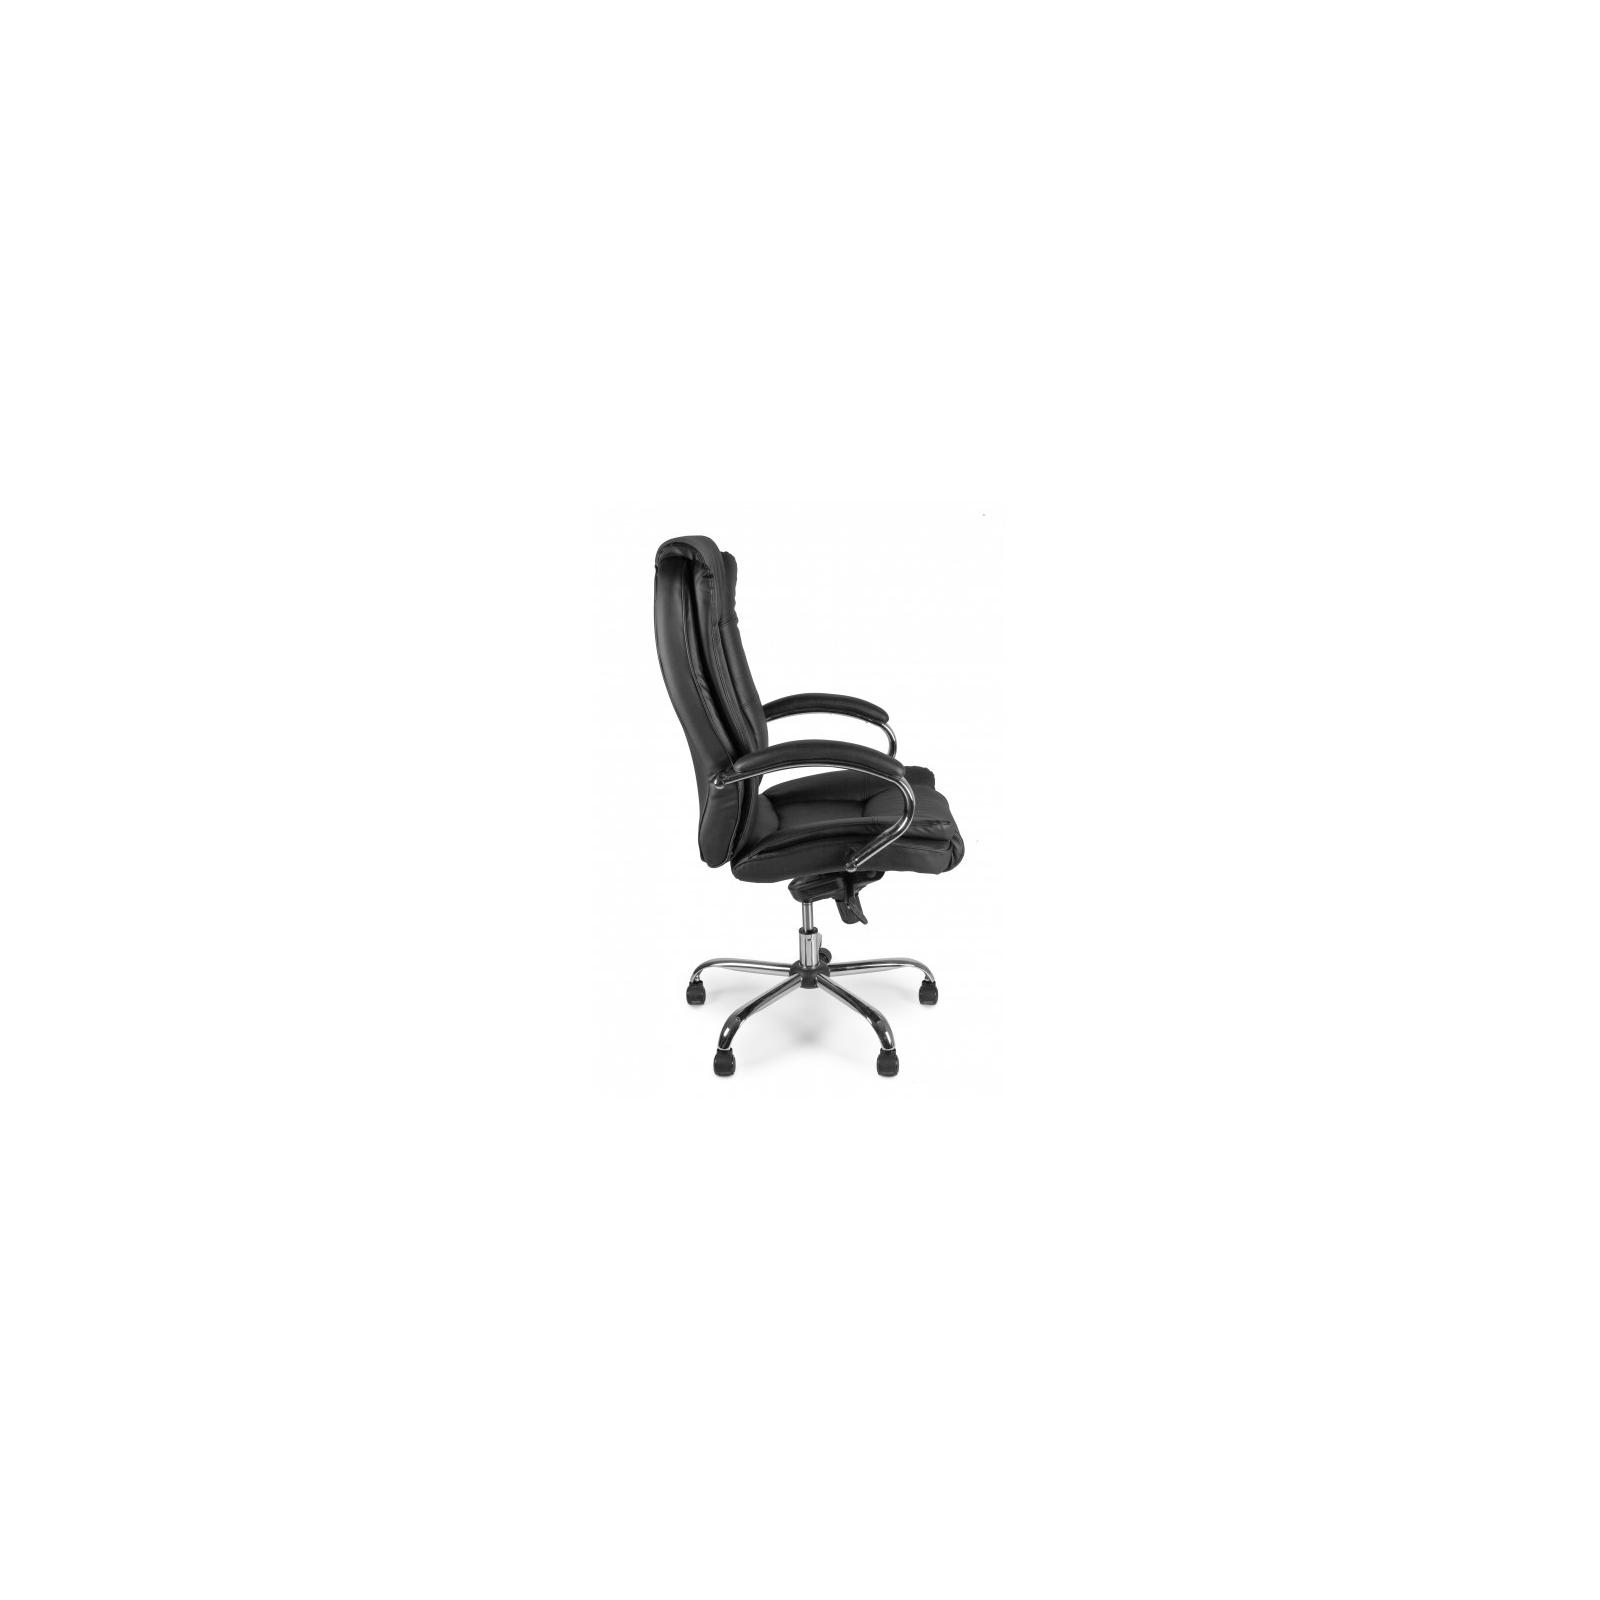 Офисное кресло Barsky Soft Leather MultiBlock Сhrom (Soft-05) изображение 4